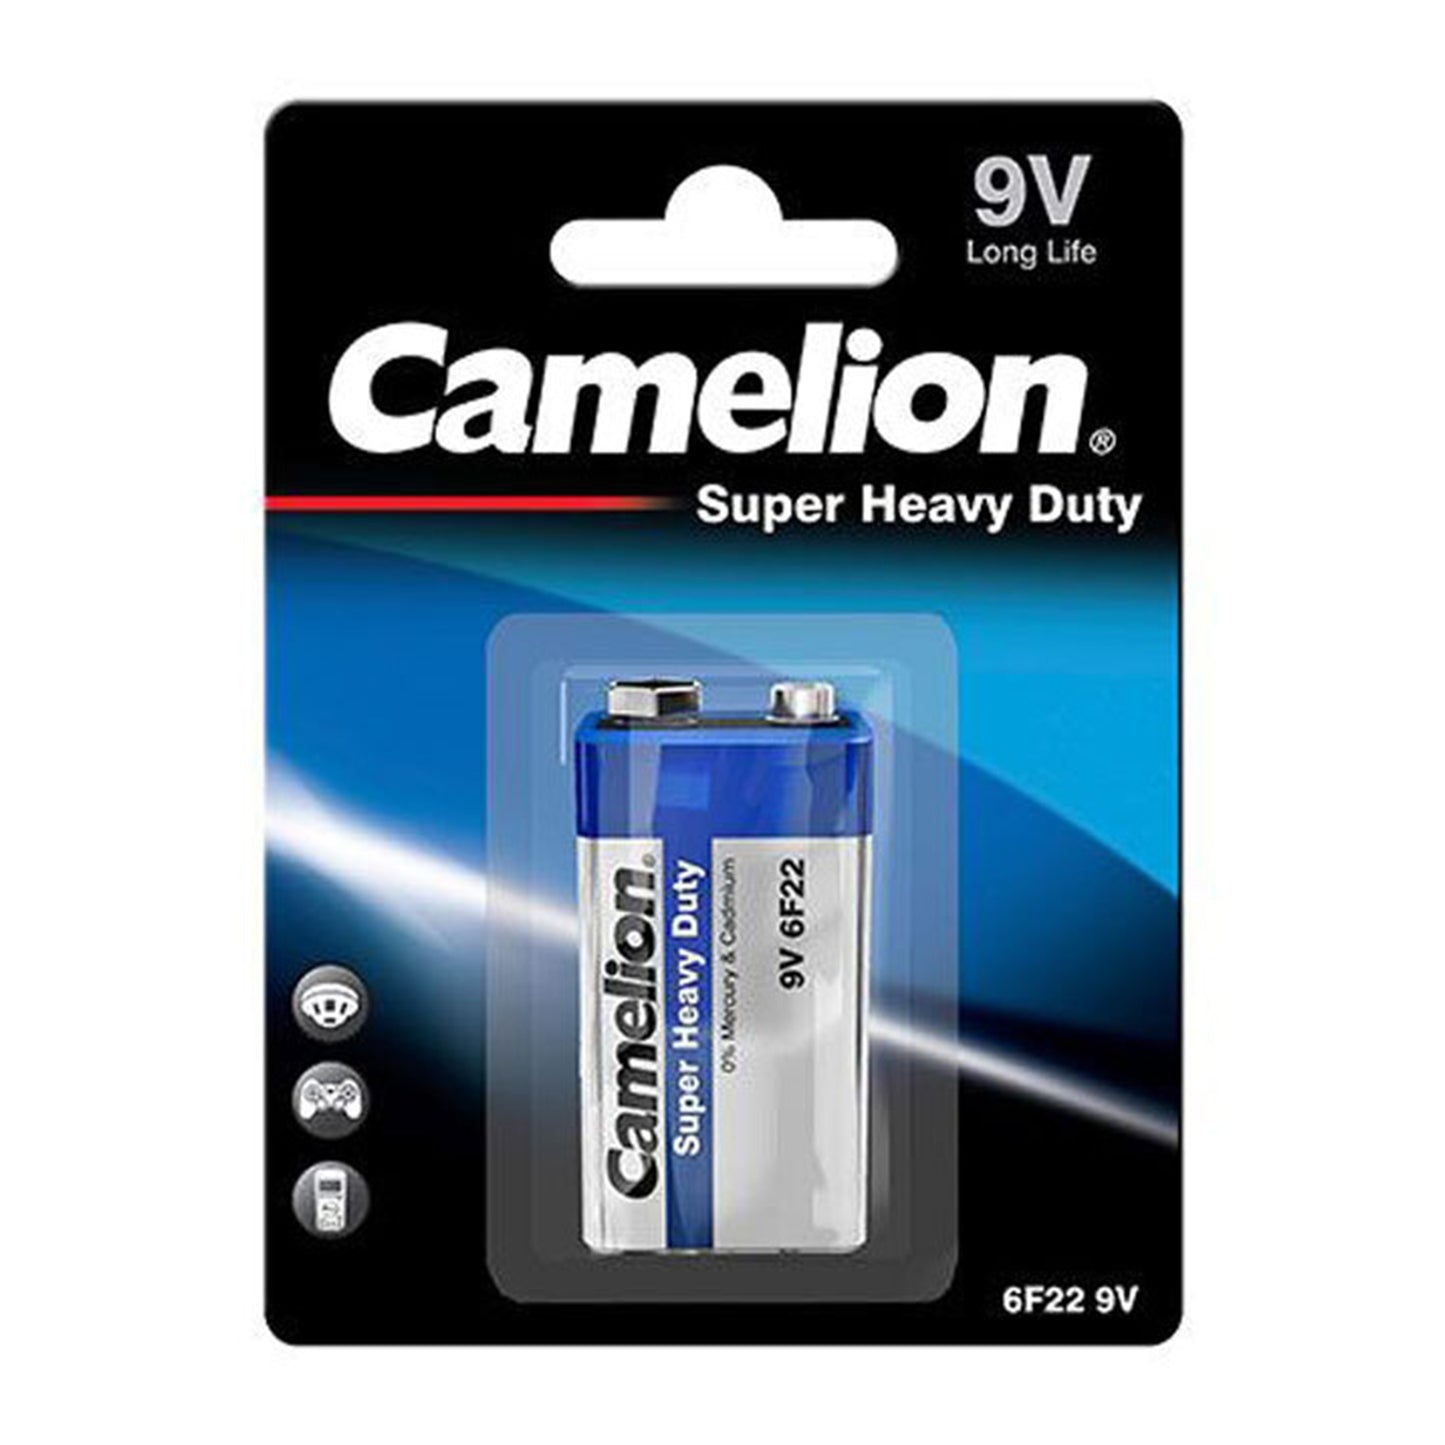 Camelion Super Heavy Duty 9V Battery